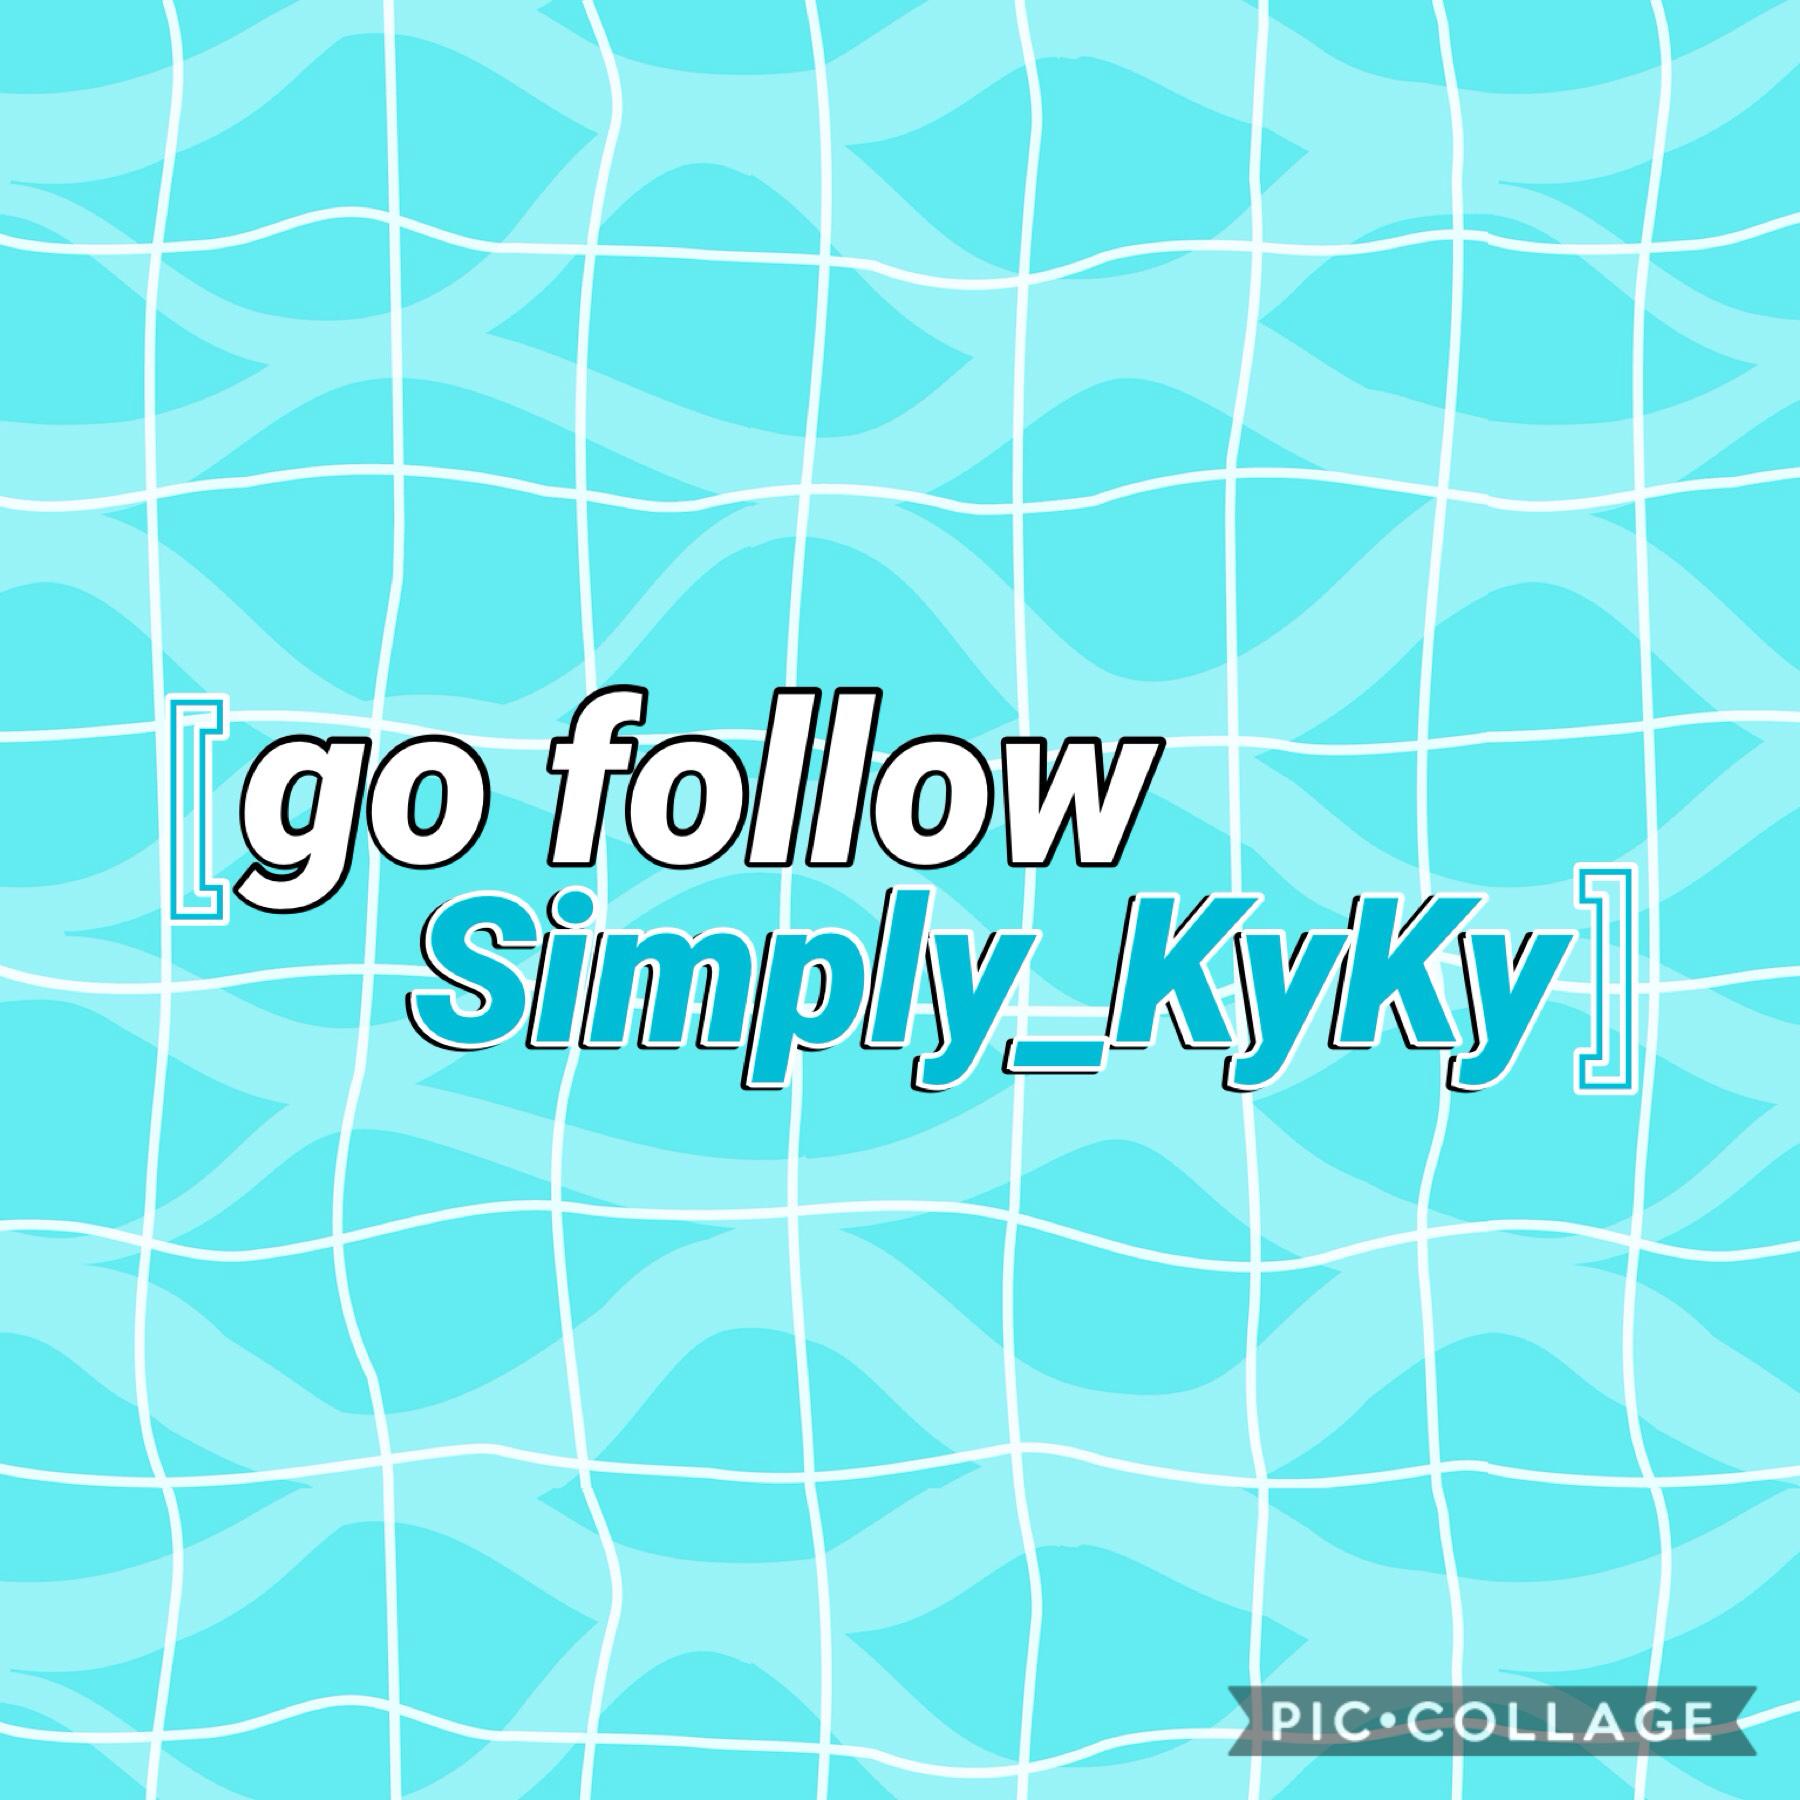 Go follow her!